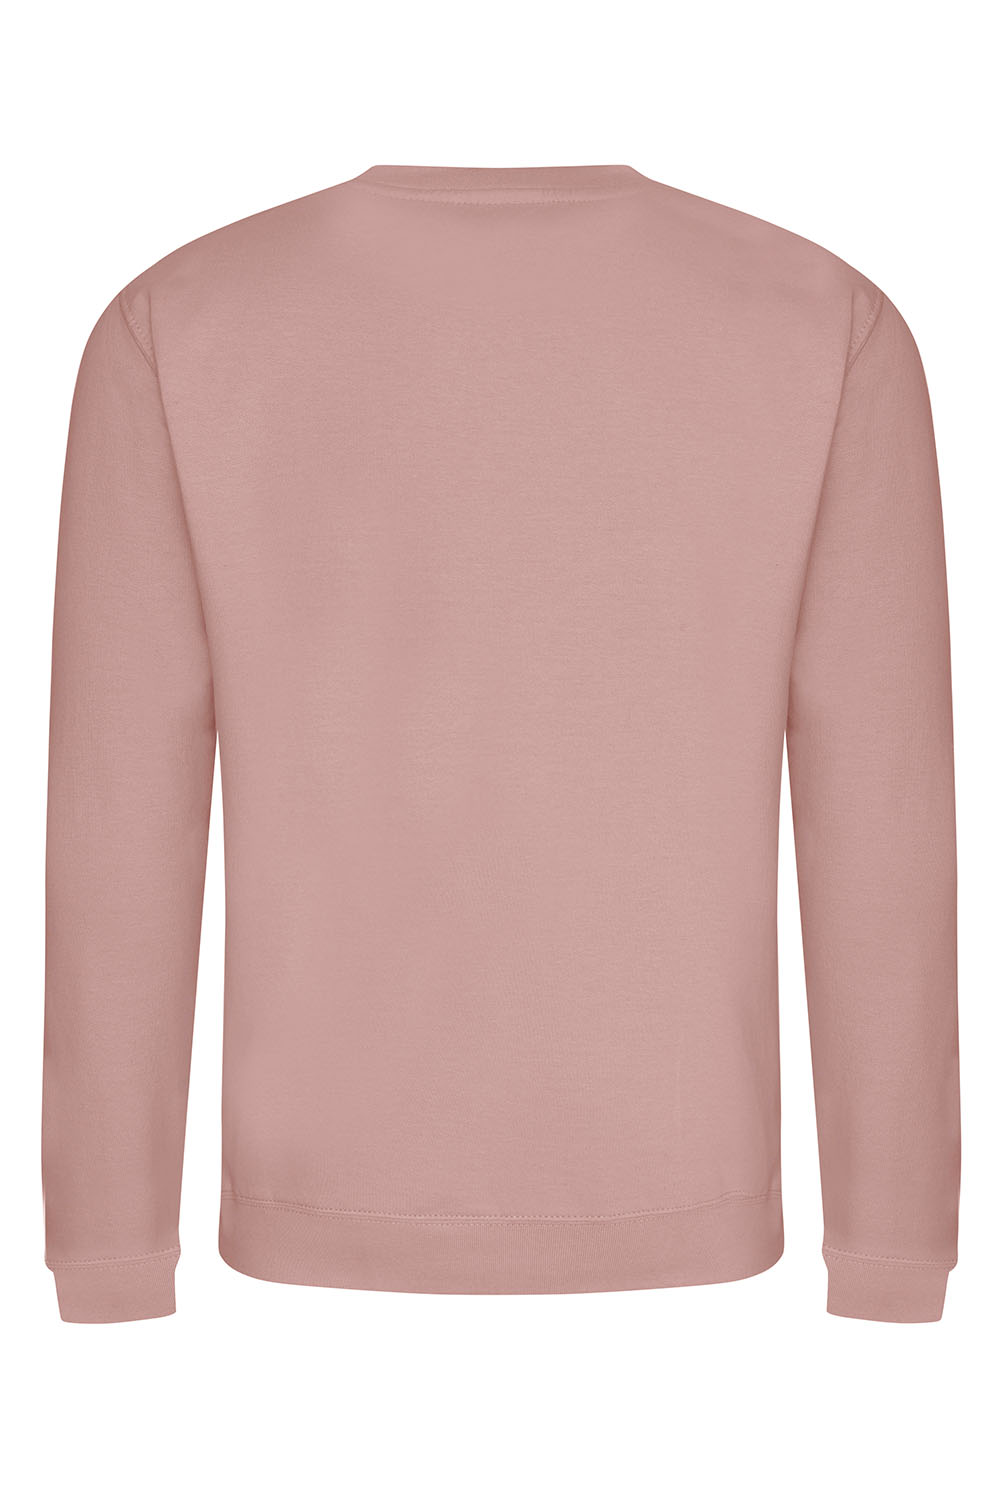 Plain Sweatshirt In Dusty Pink (Single)